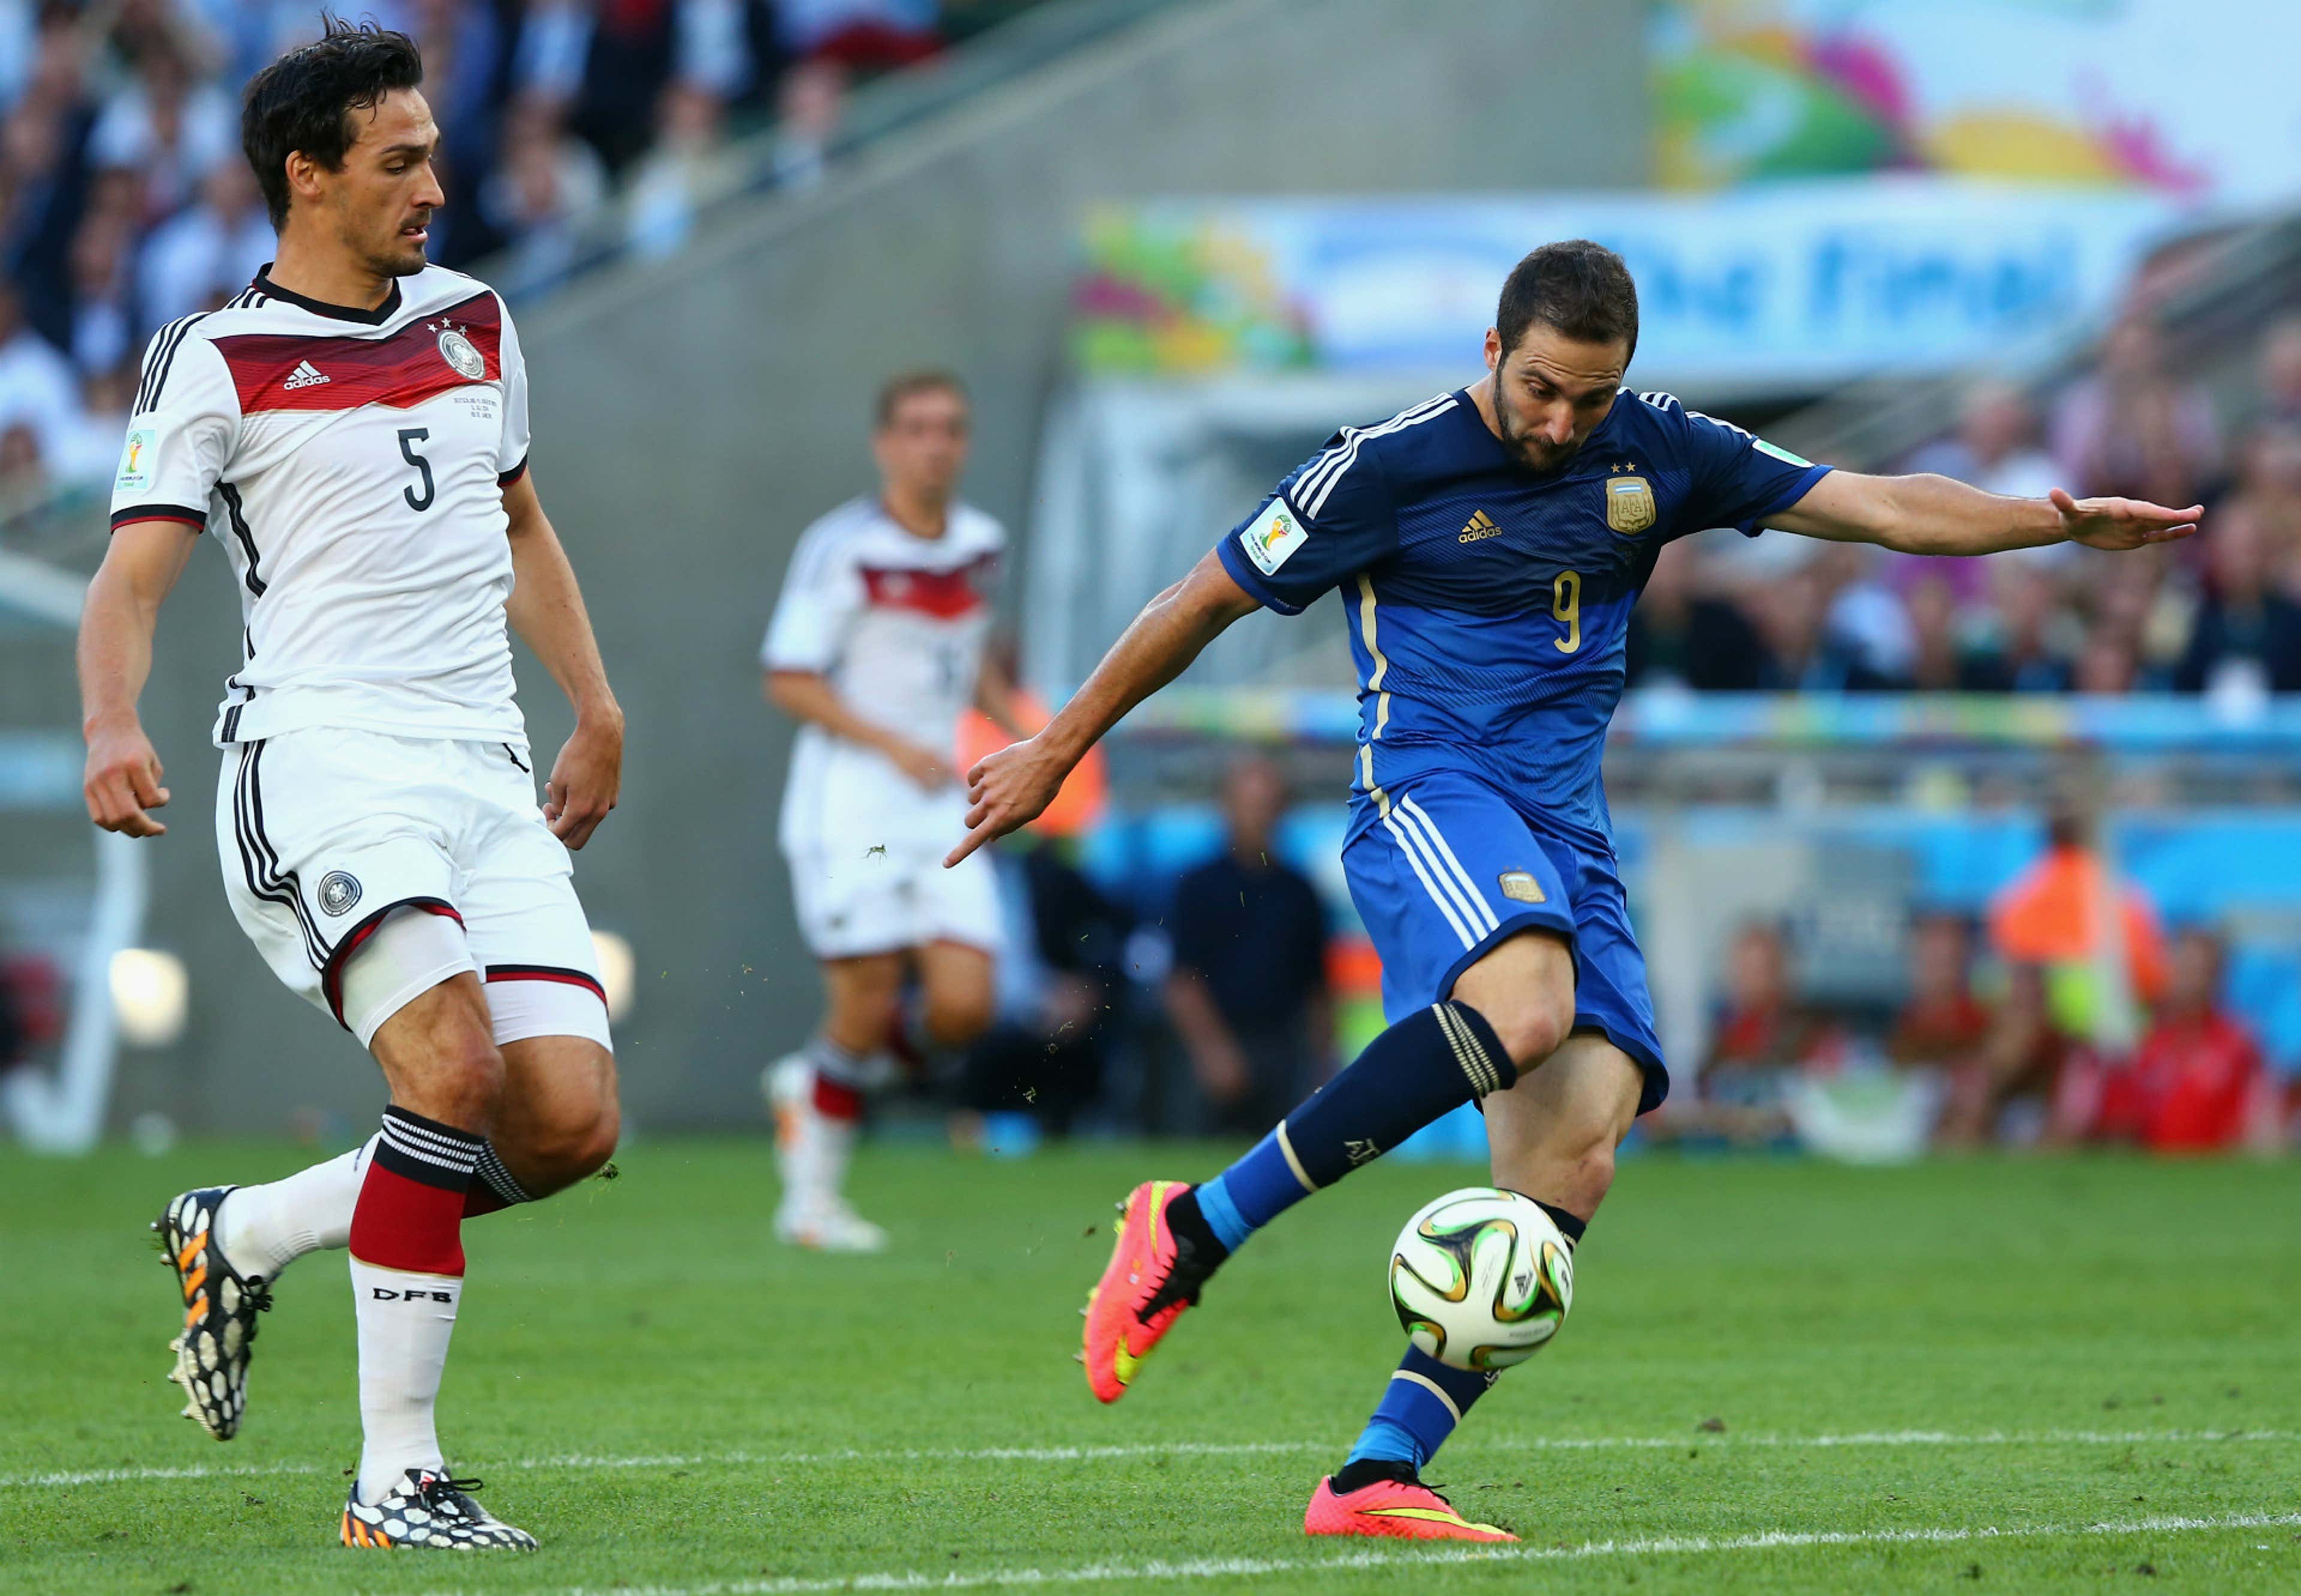 MATS HUMMELS GERMANY GONZALO HIGUAIN ARGENTINA 2014 WORLD CUP FINAL 07132014